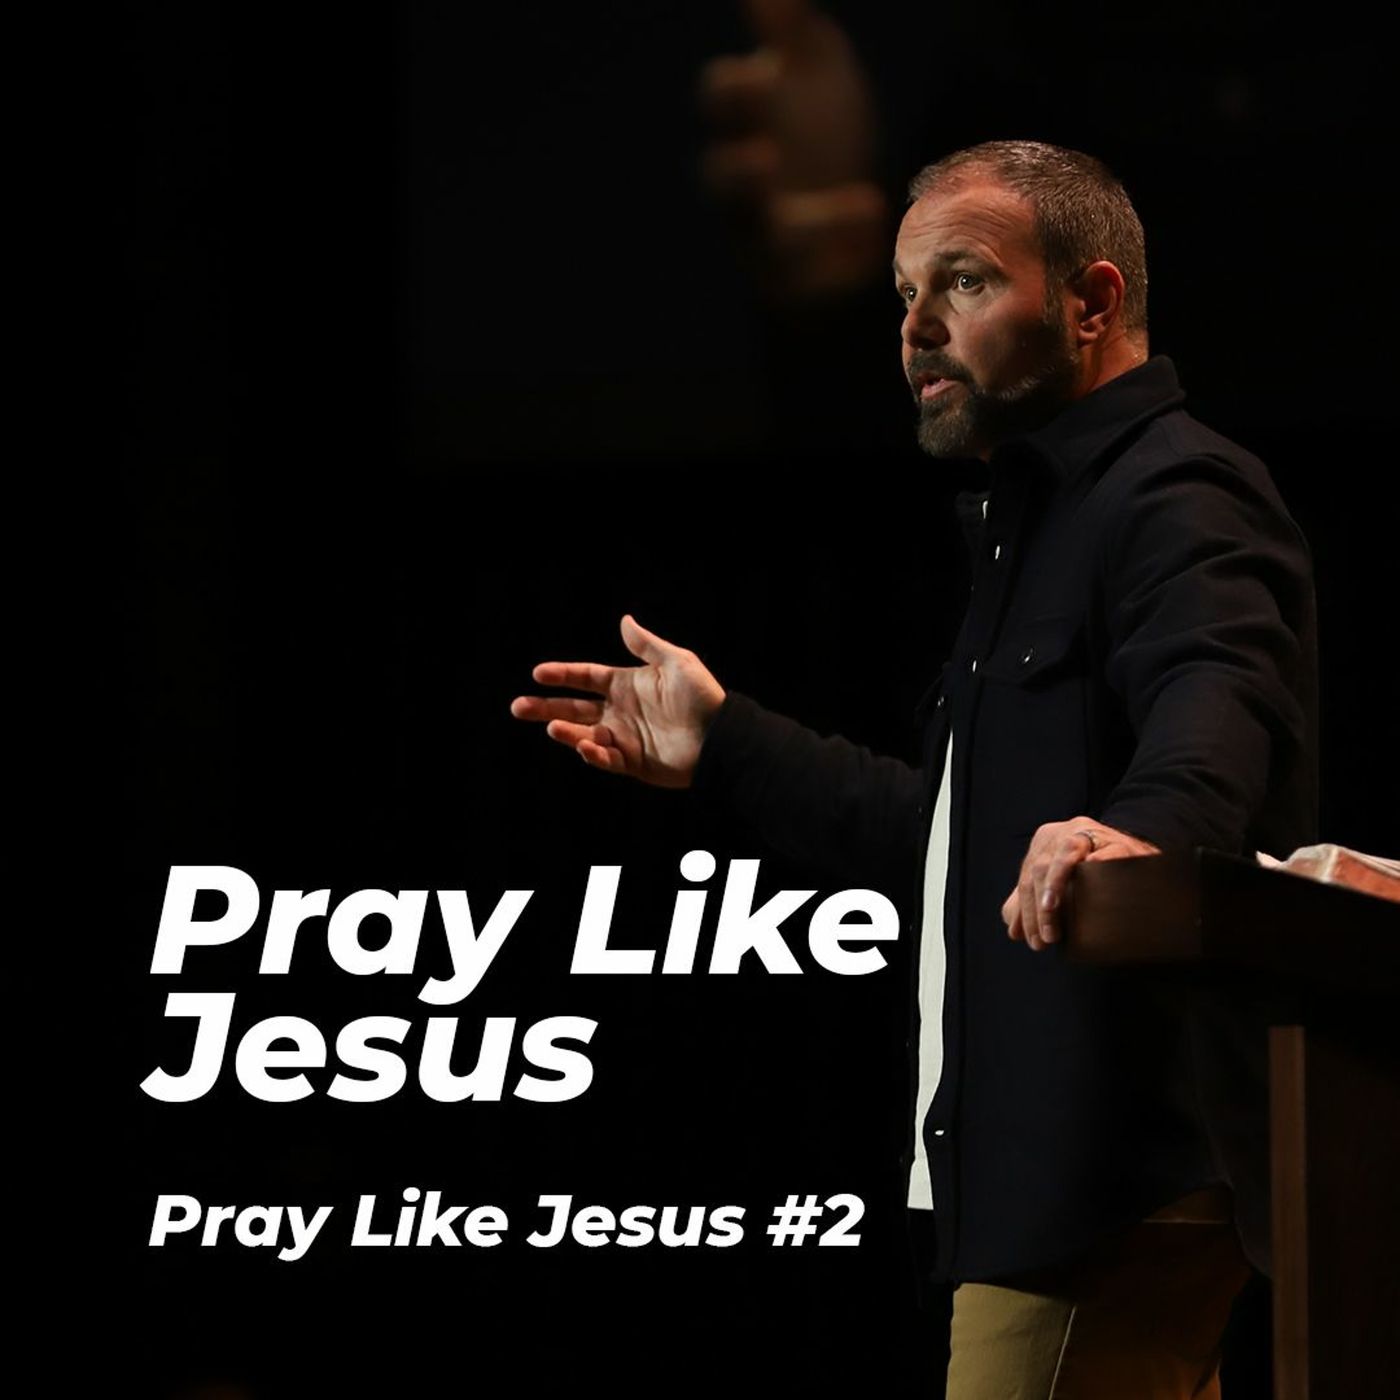 Pray Like Jesus #2 - Pray Like Jesus